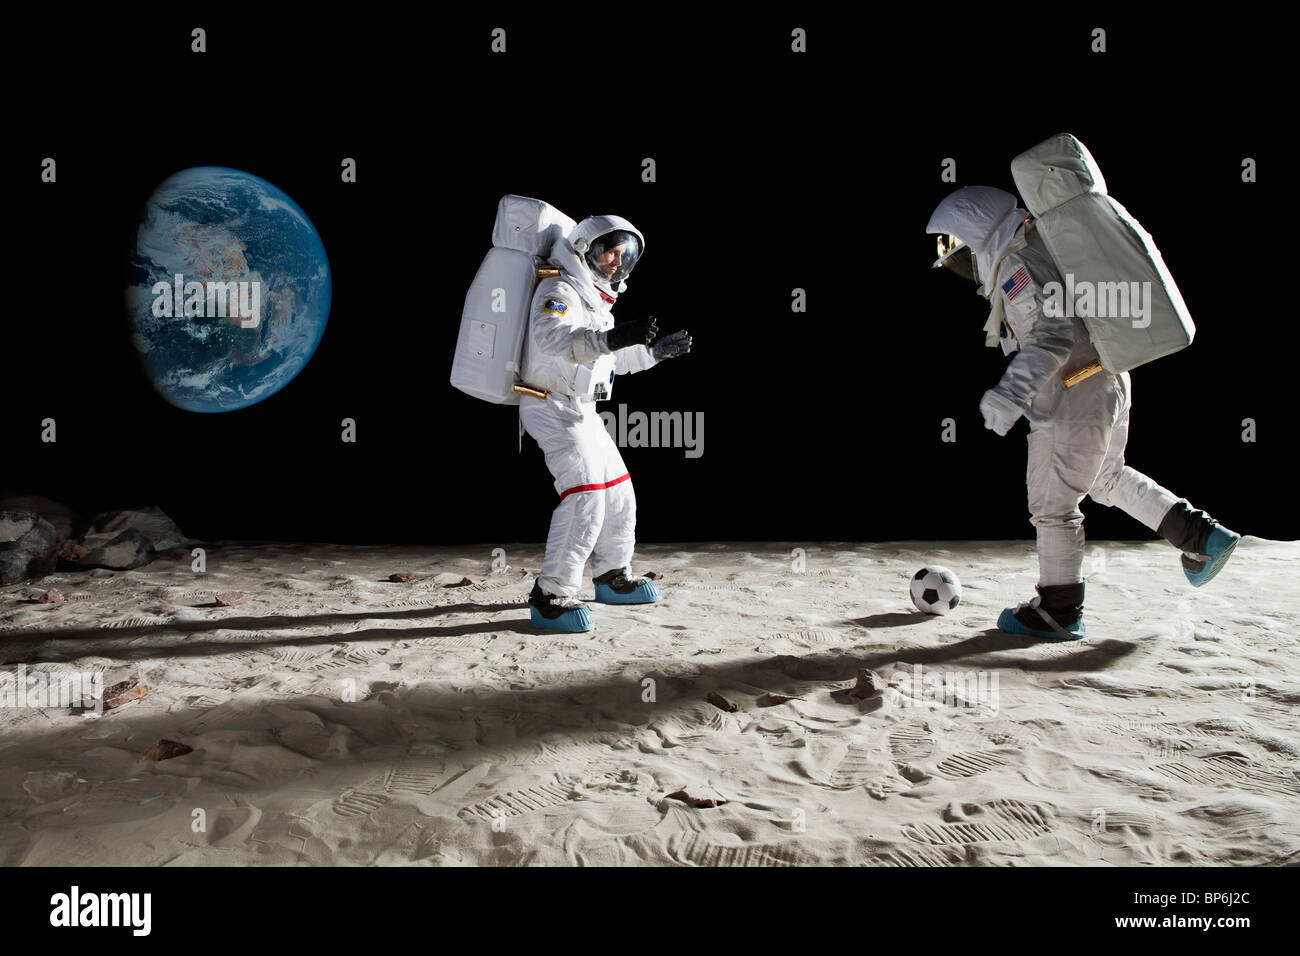 Zwei Astronauten auf dem Mond Fußball spielen Stockfoto